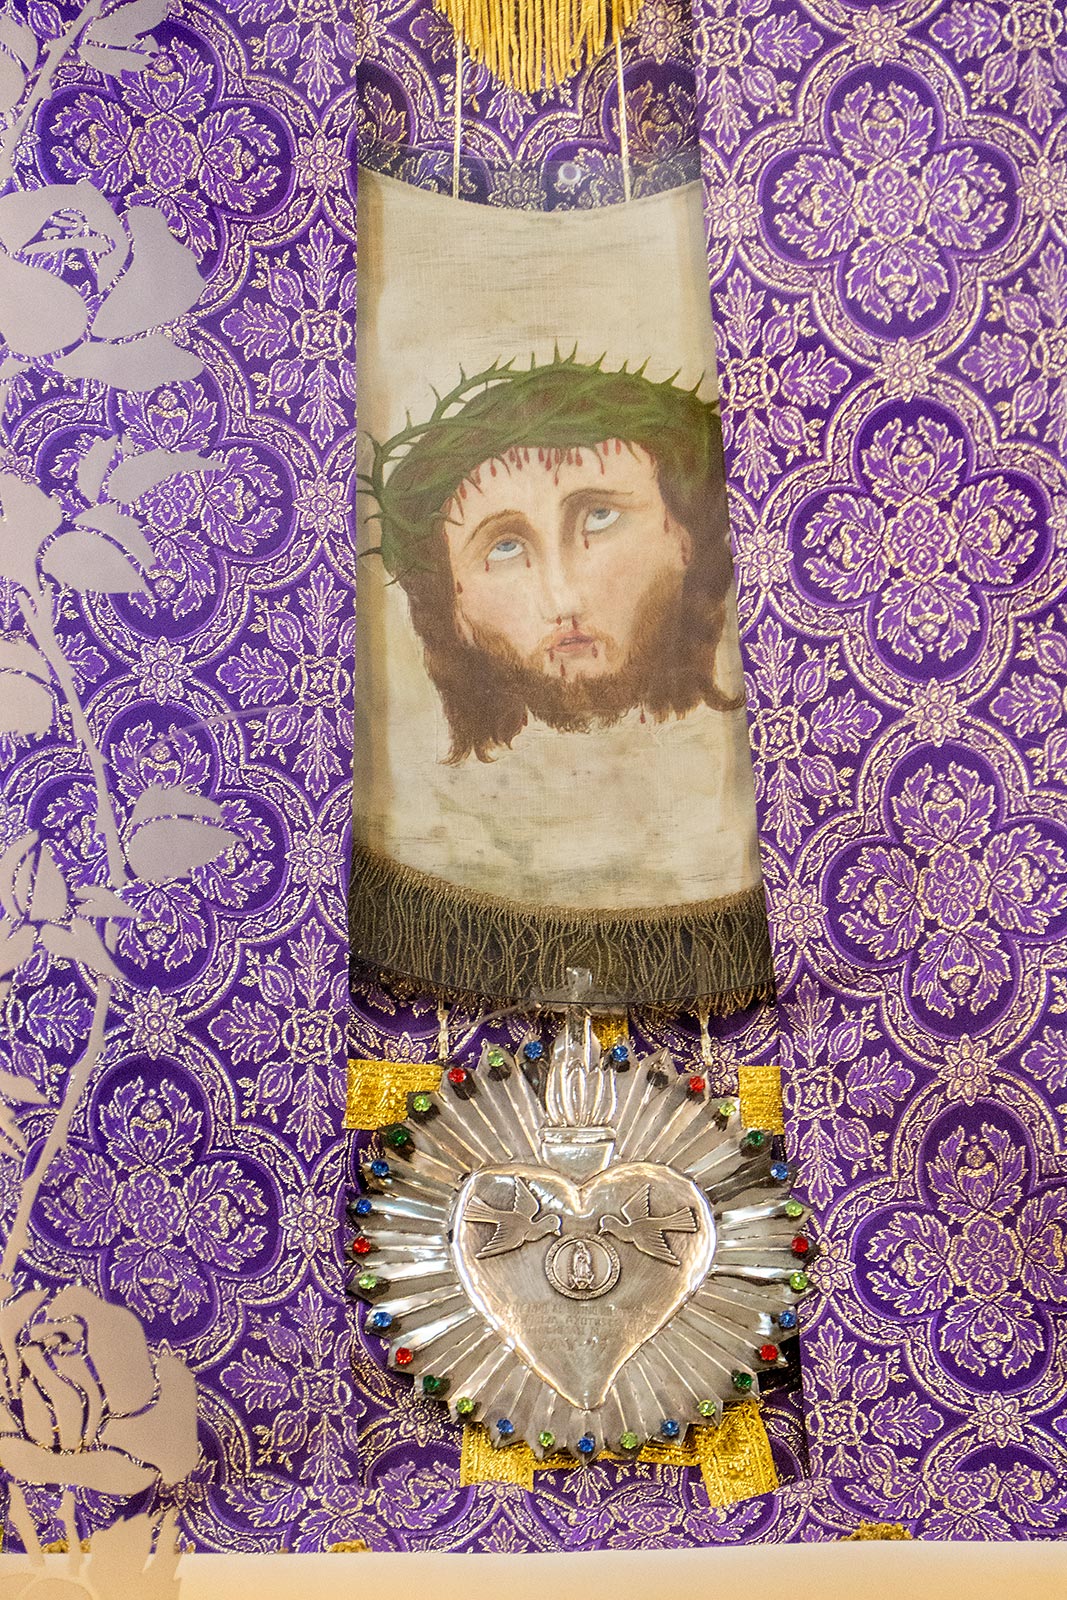 कपड़े पर यीशु की चमत्कारी छवि, संतुआरियो डेल डिविनो रोस्त्रो में मुख्य वेदी